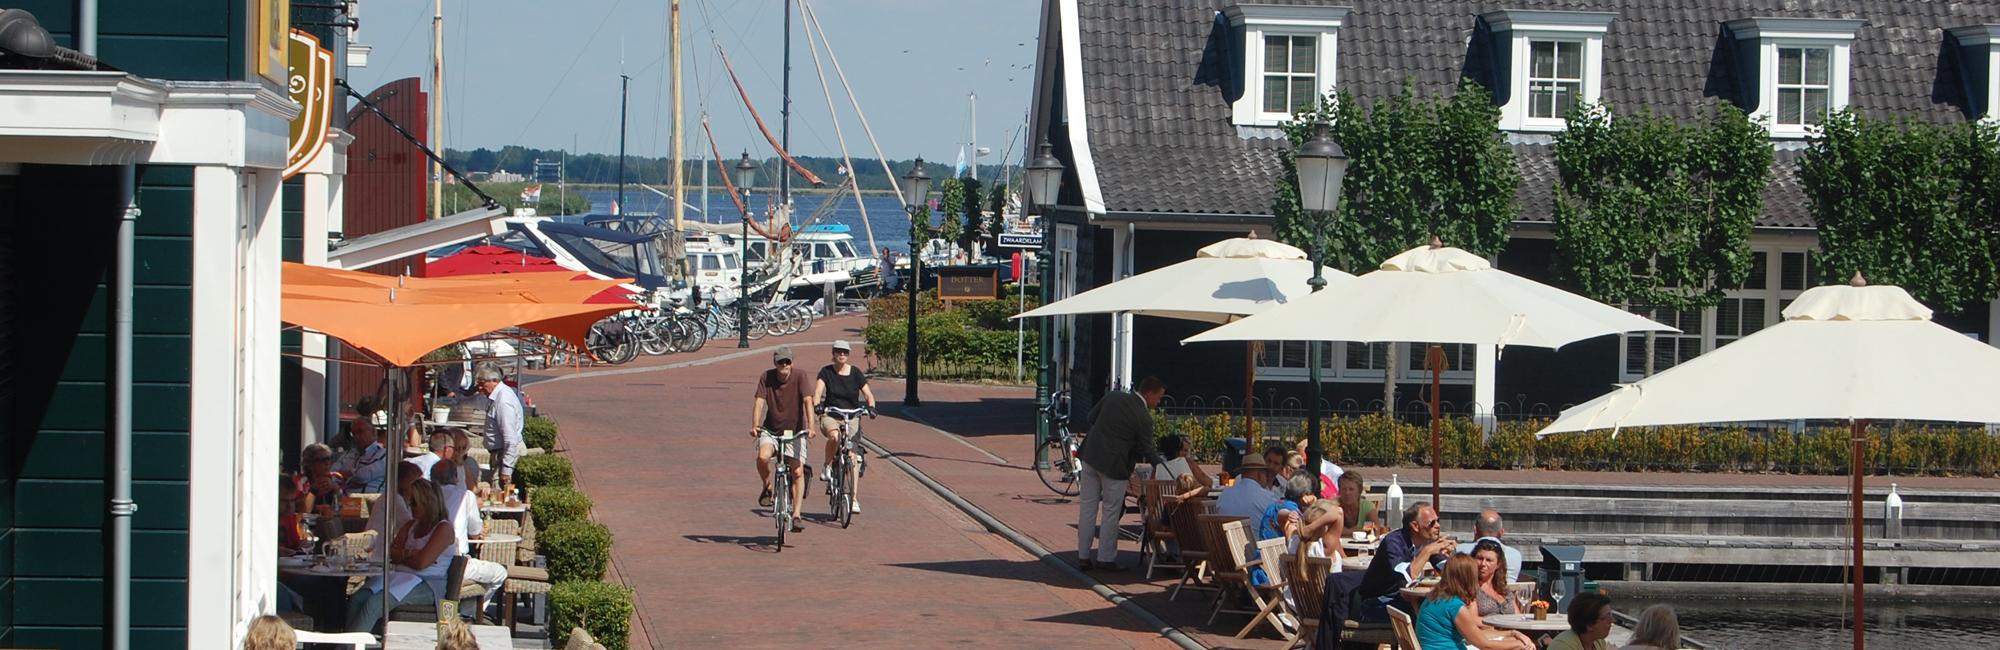 Rondje IJsselmeer fietsen - Fietsvakantie Nederland met bagagevervoer